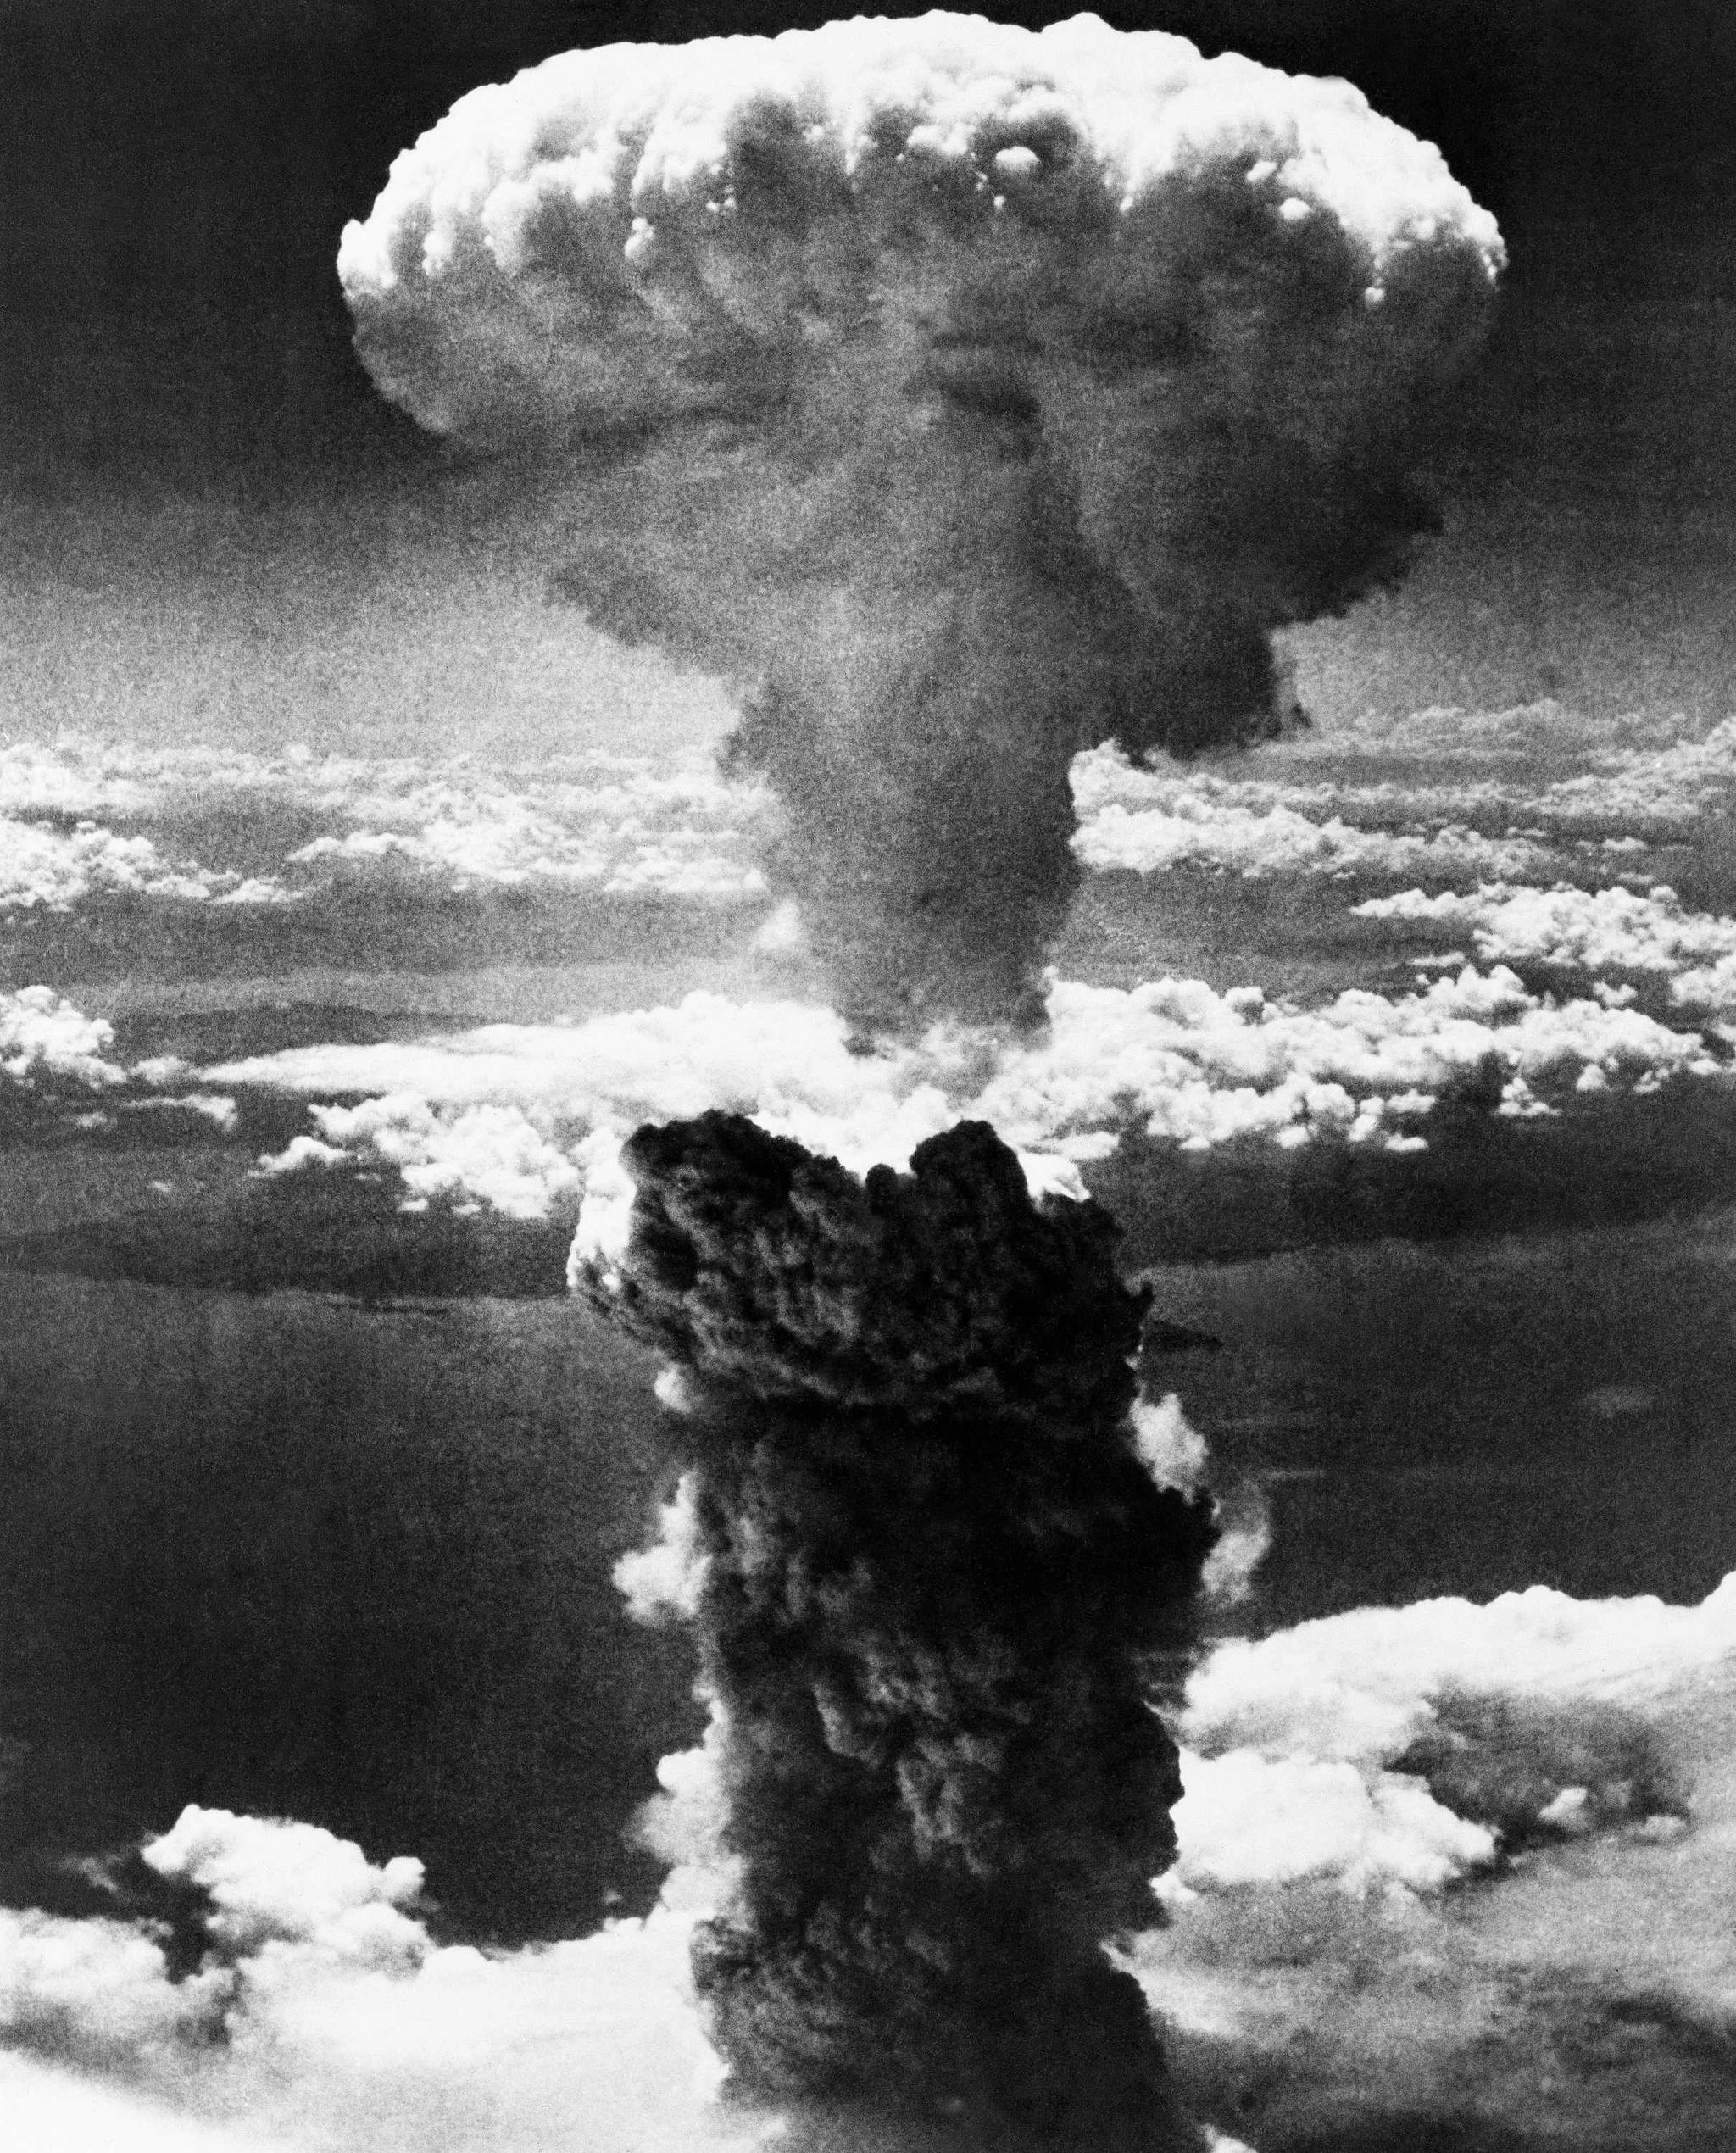 Prøvesprengningen i Nord-Korea i natt  var trolig kraftigere enn bomben som ble sluppet over Nagasaki 9. august 1945.